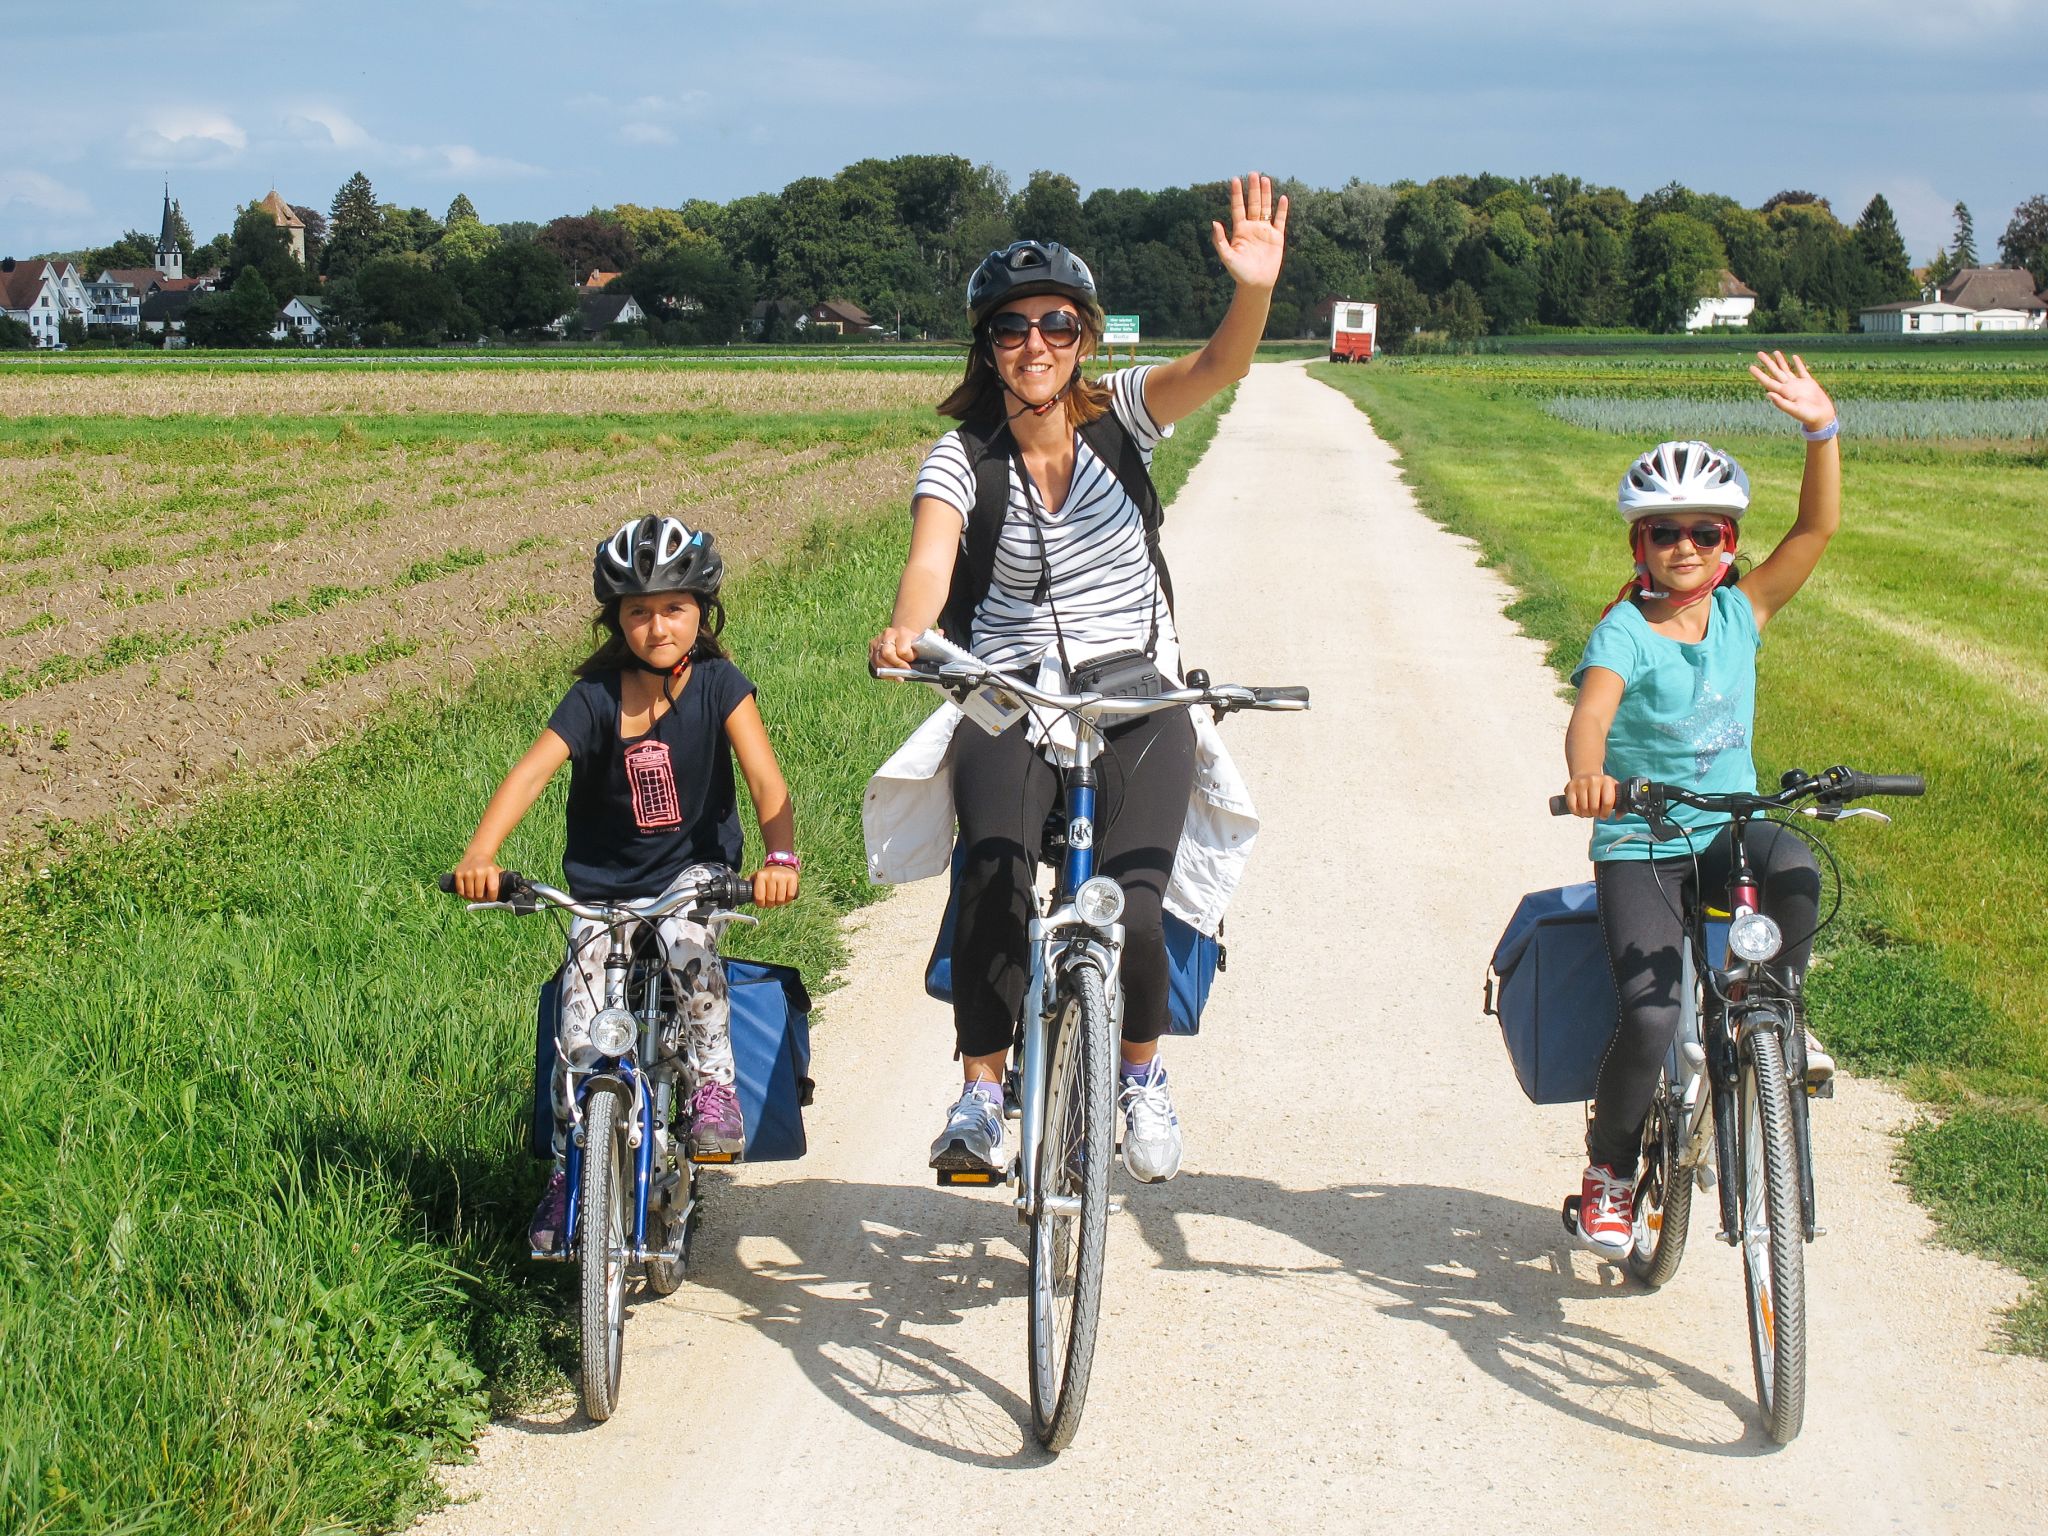 Famiglia di cicloturisti, bambine con caschetto, bici bimbo, paesaggio verde coltivato, divertimento, lago di Costanza